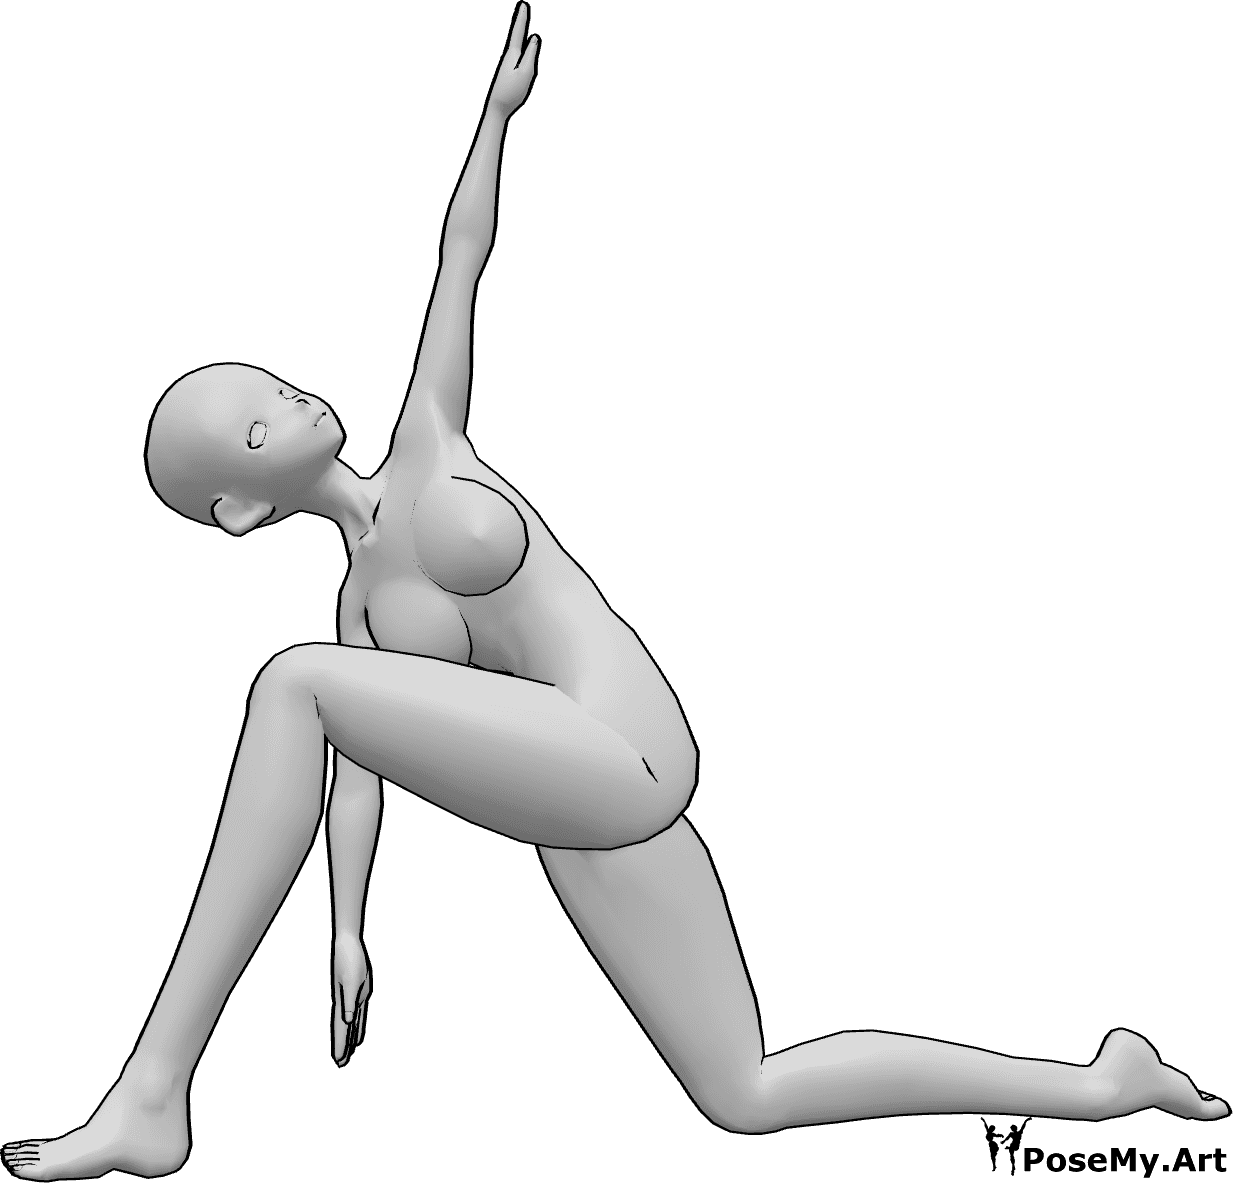 Posen-Referenz- Anime kniend Yoga-Pose - Anime-Frau macht Yoga, kniet und dehnt sich, hebt ihre linke Hand und schaut nach oben